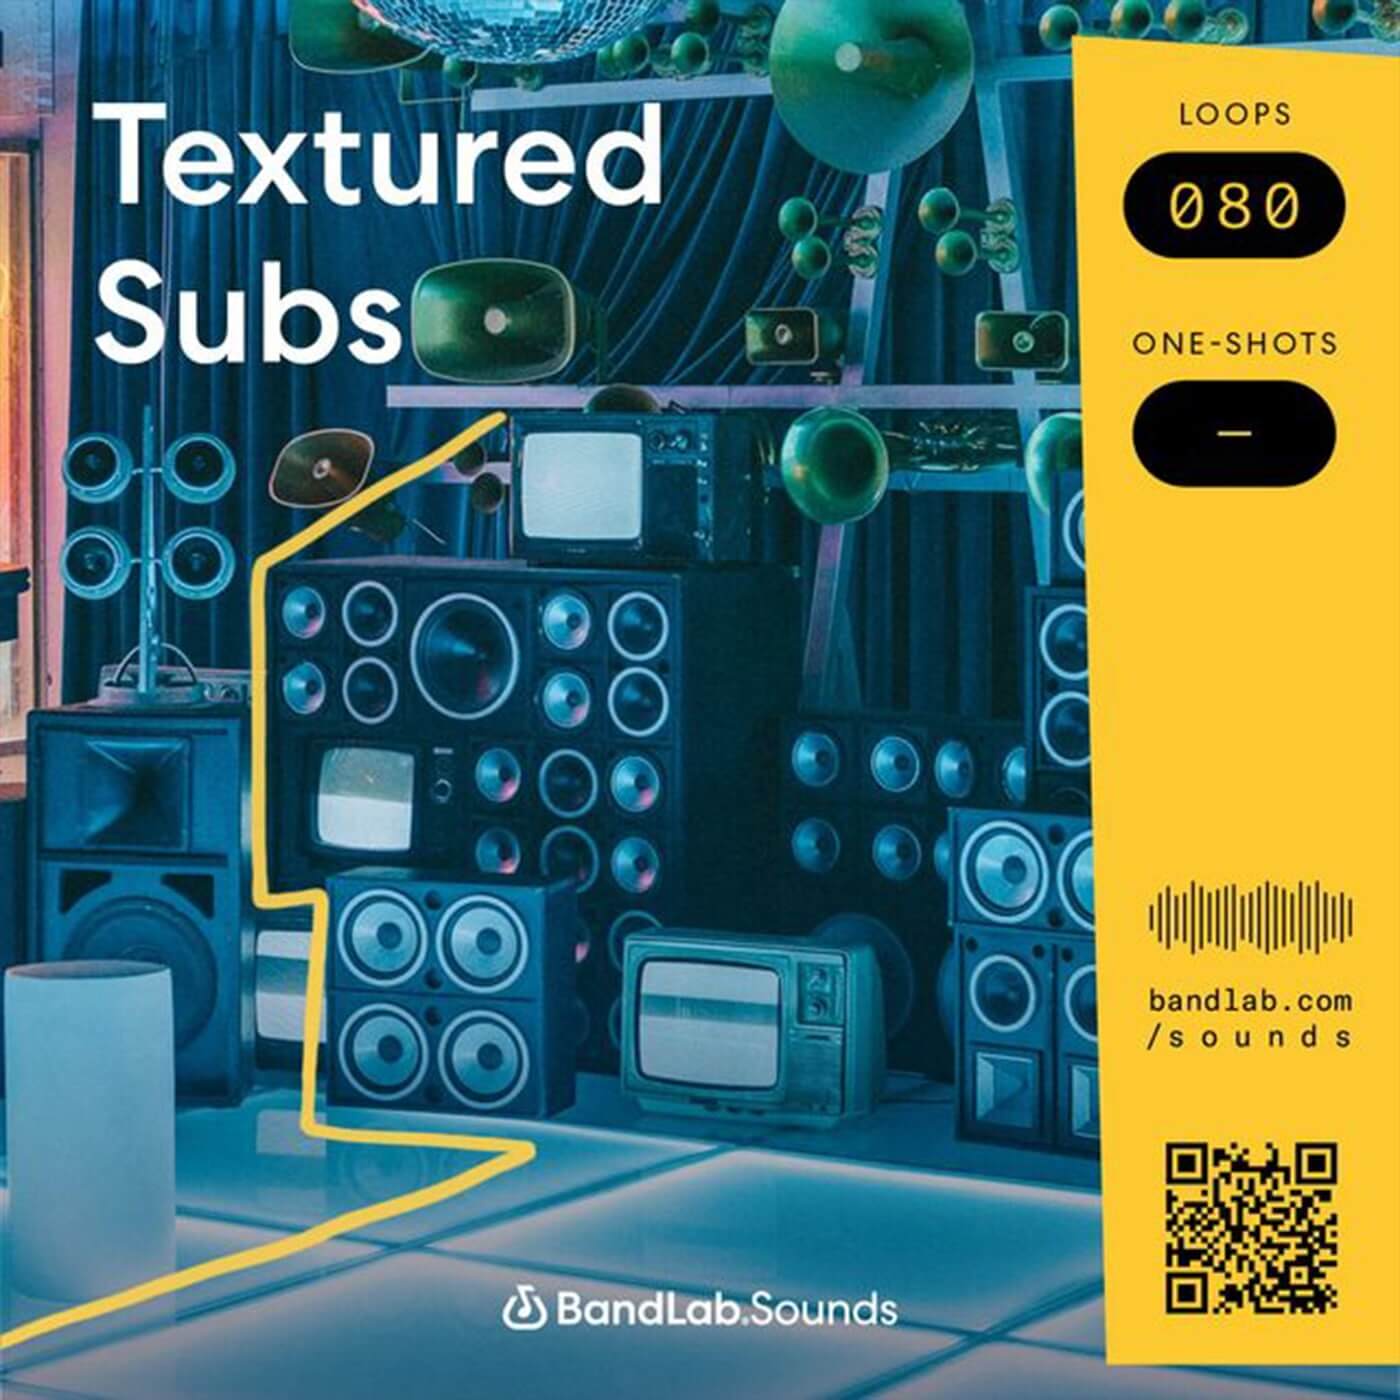 BandLab Sounds Textured Subs sample pack artwork